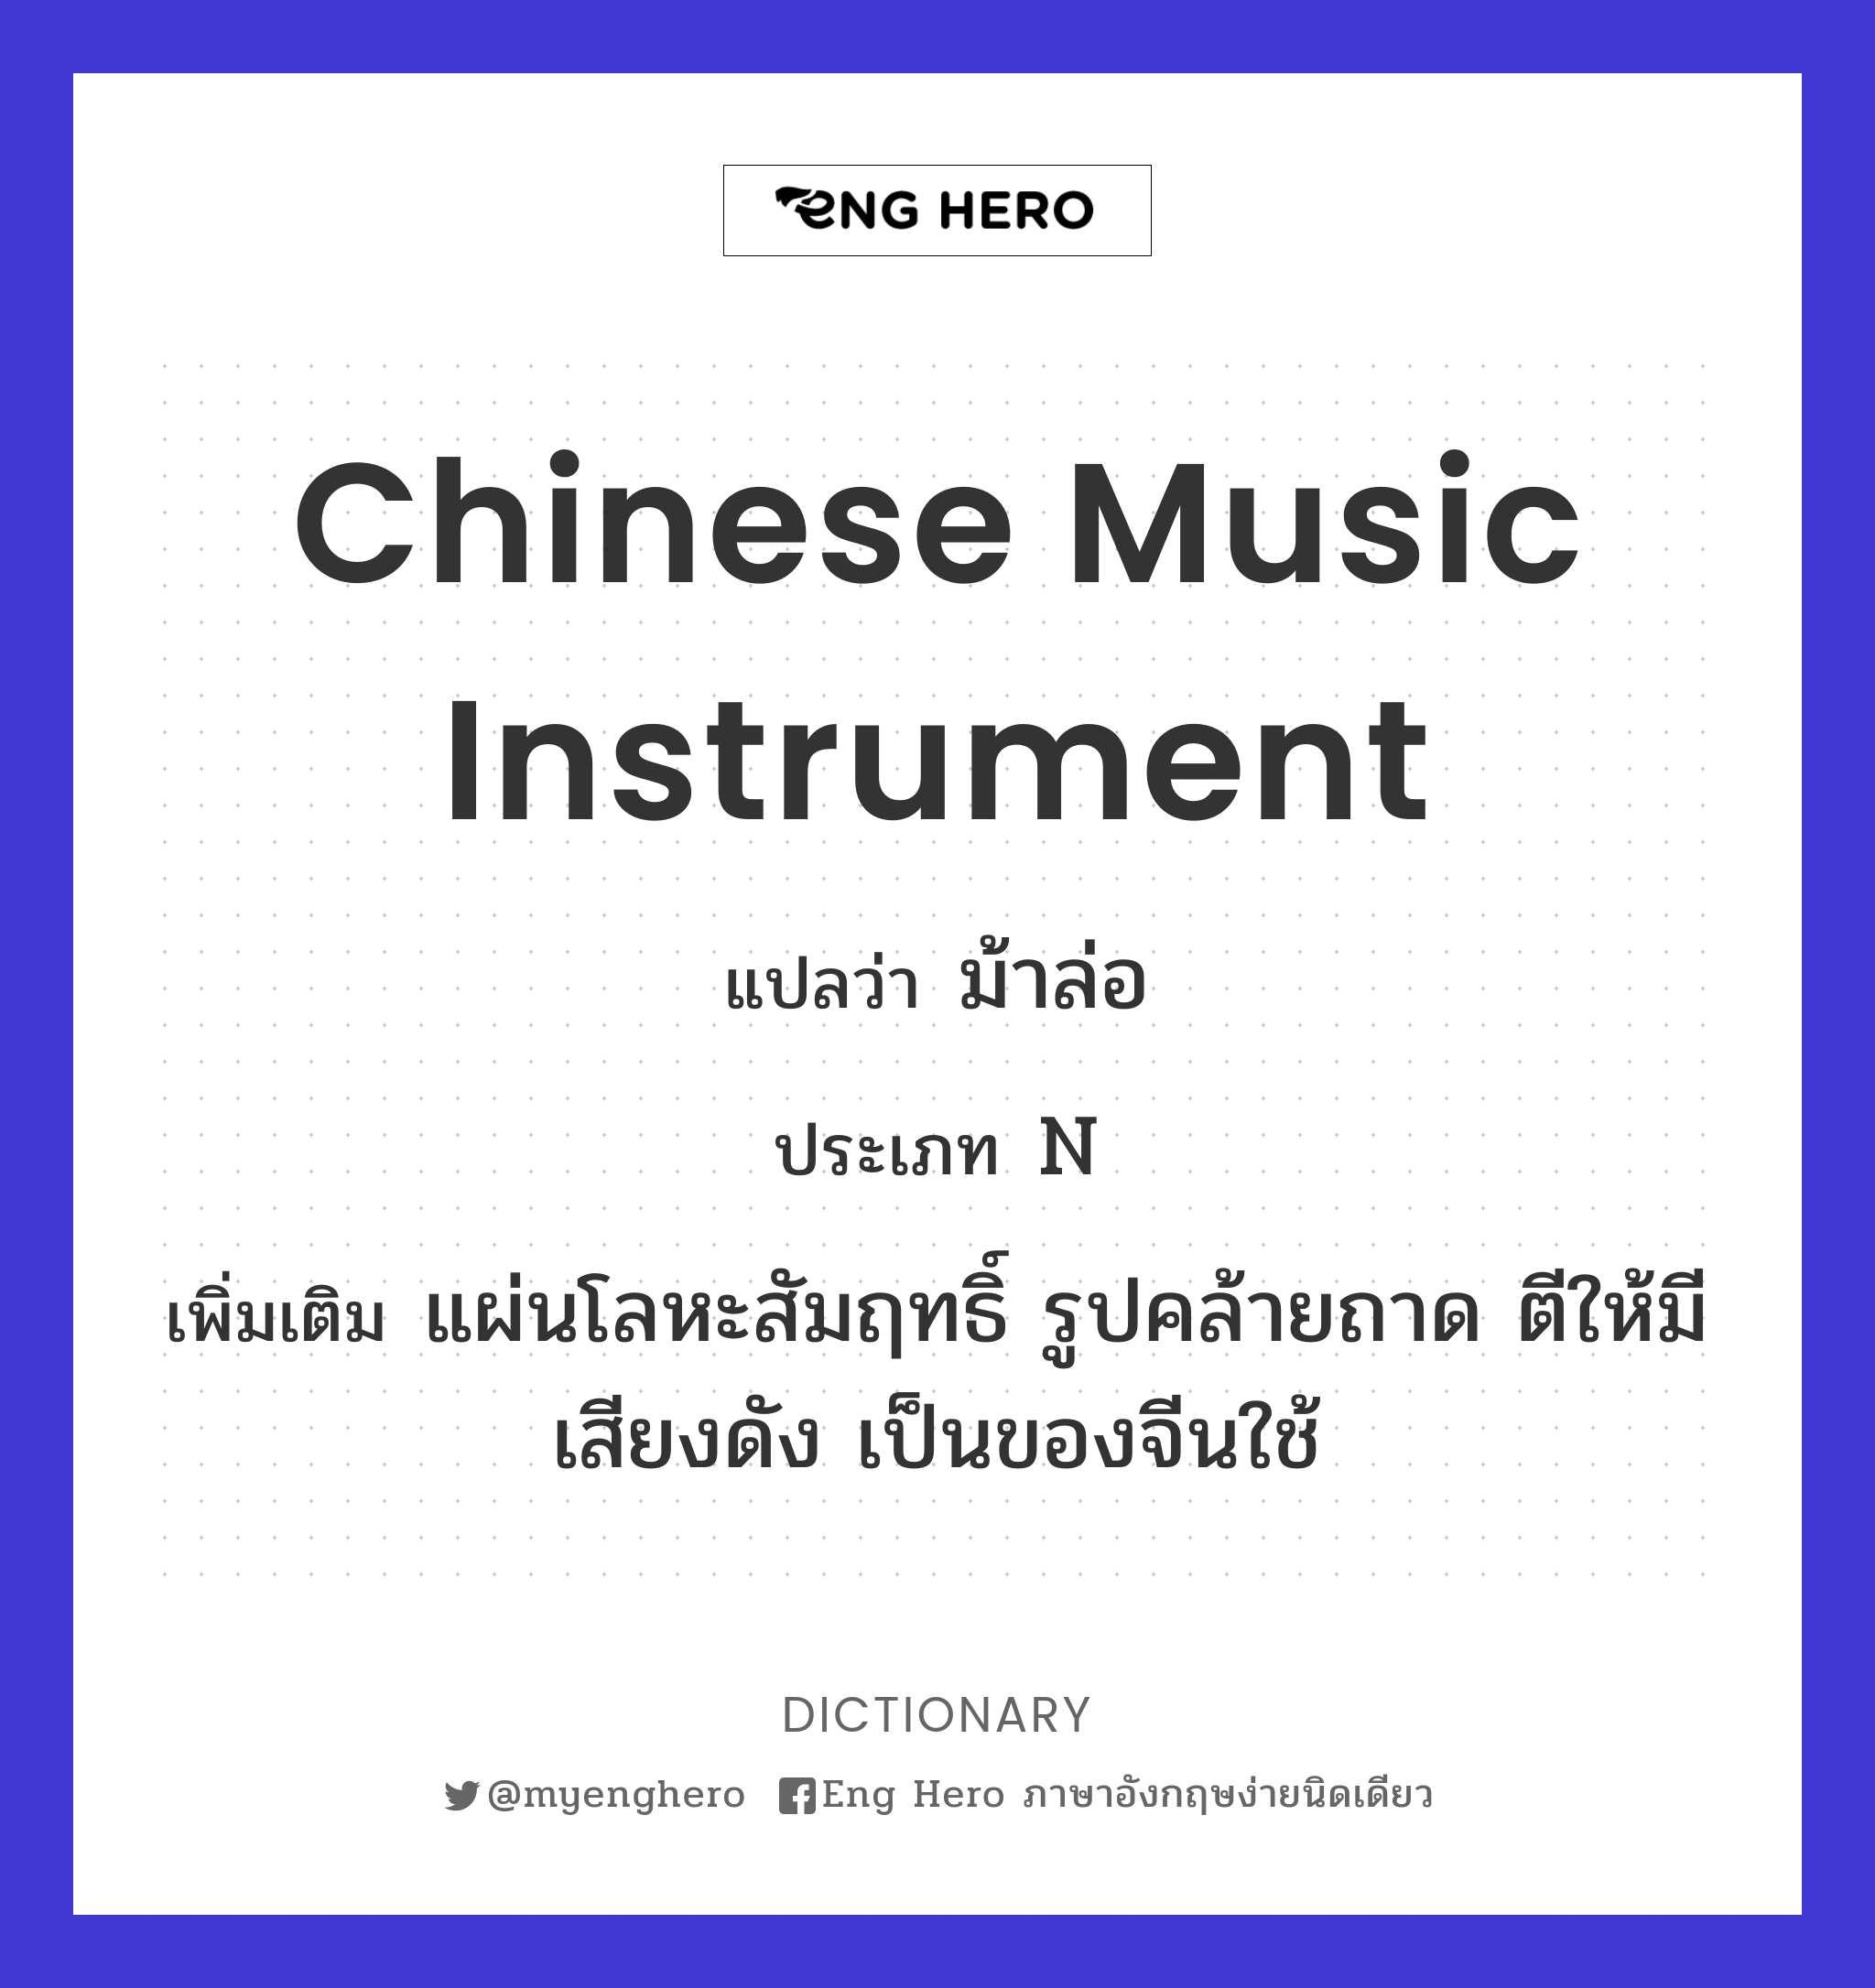 Chinese music instrument